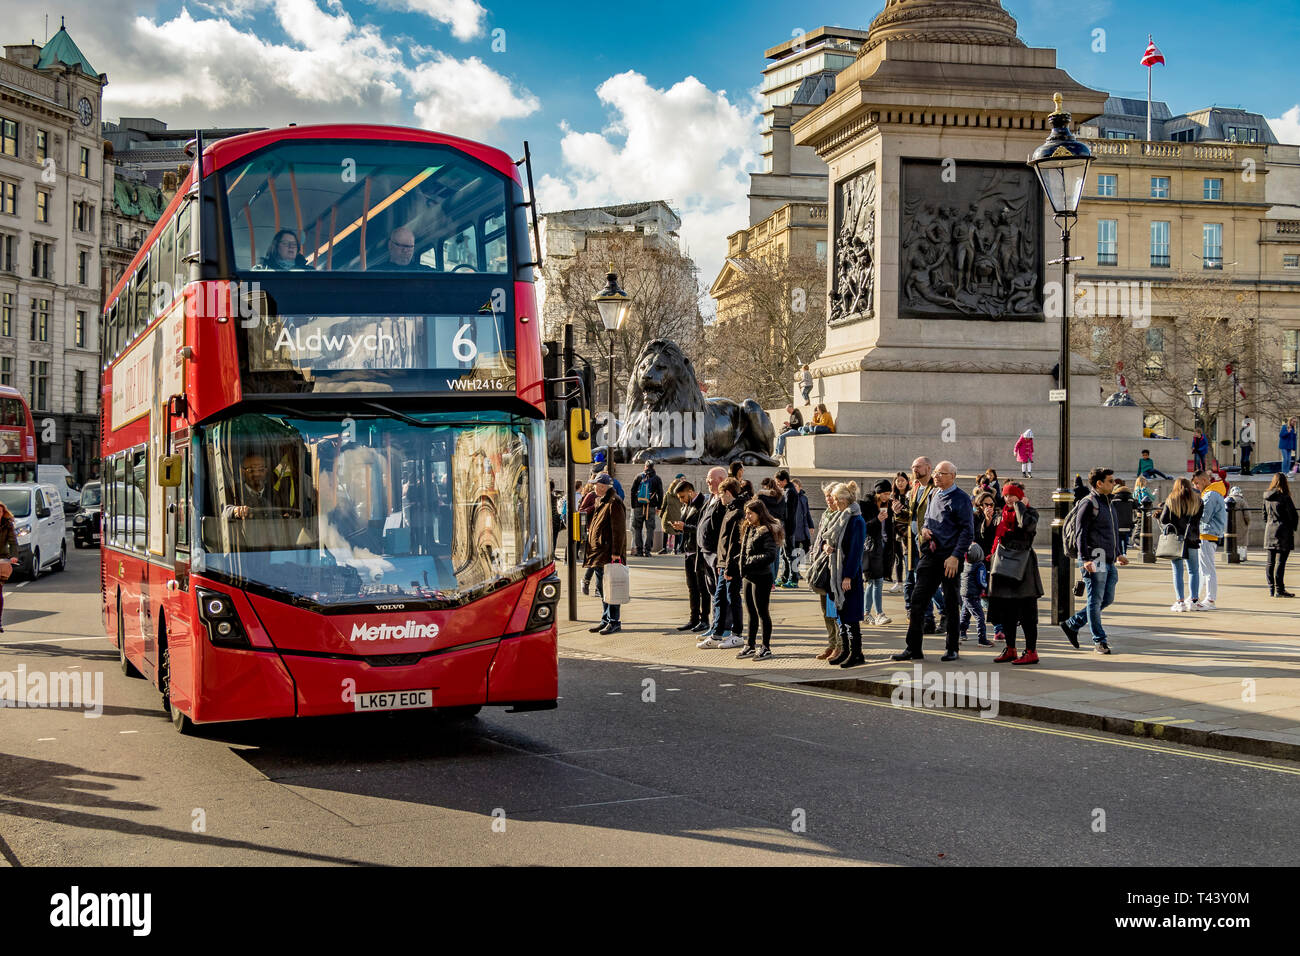 Ein Londoner Bus der Linie 6 fährt auf dem Weg nach Aldwych, London, Großbritannien, am Trafalgar Square vorbei Stockfoto